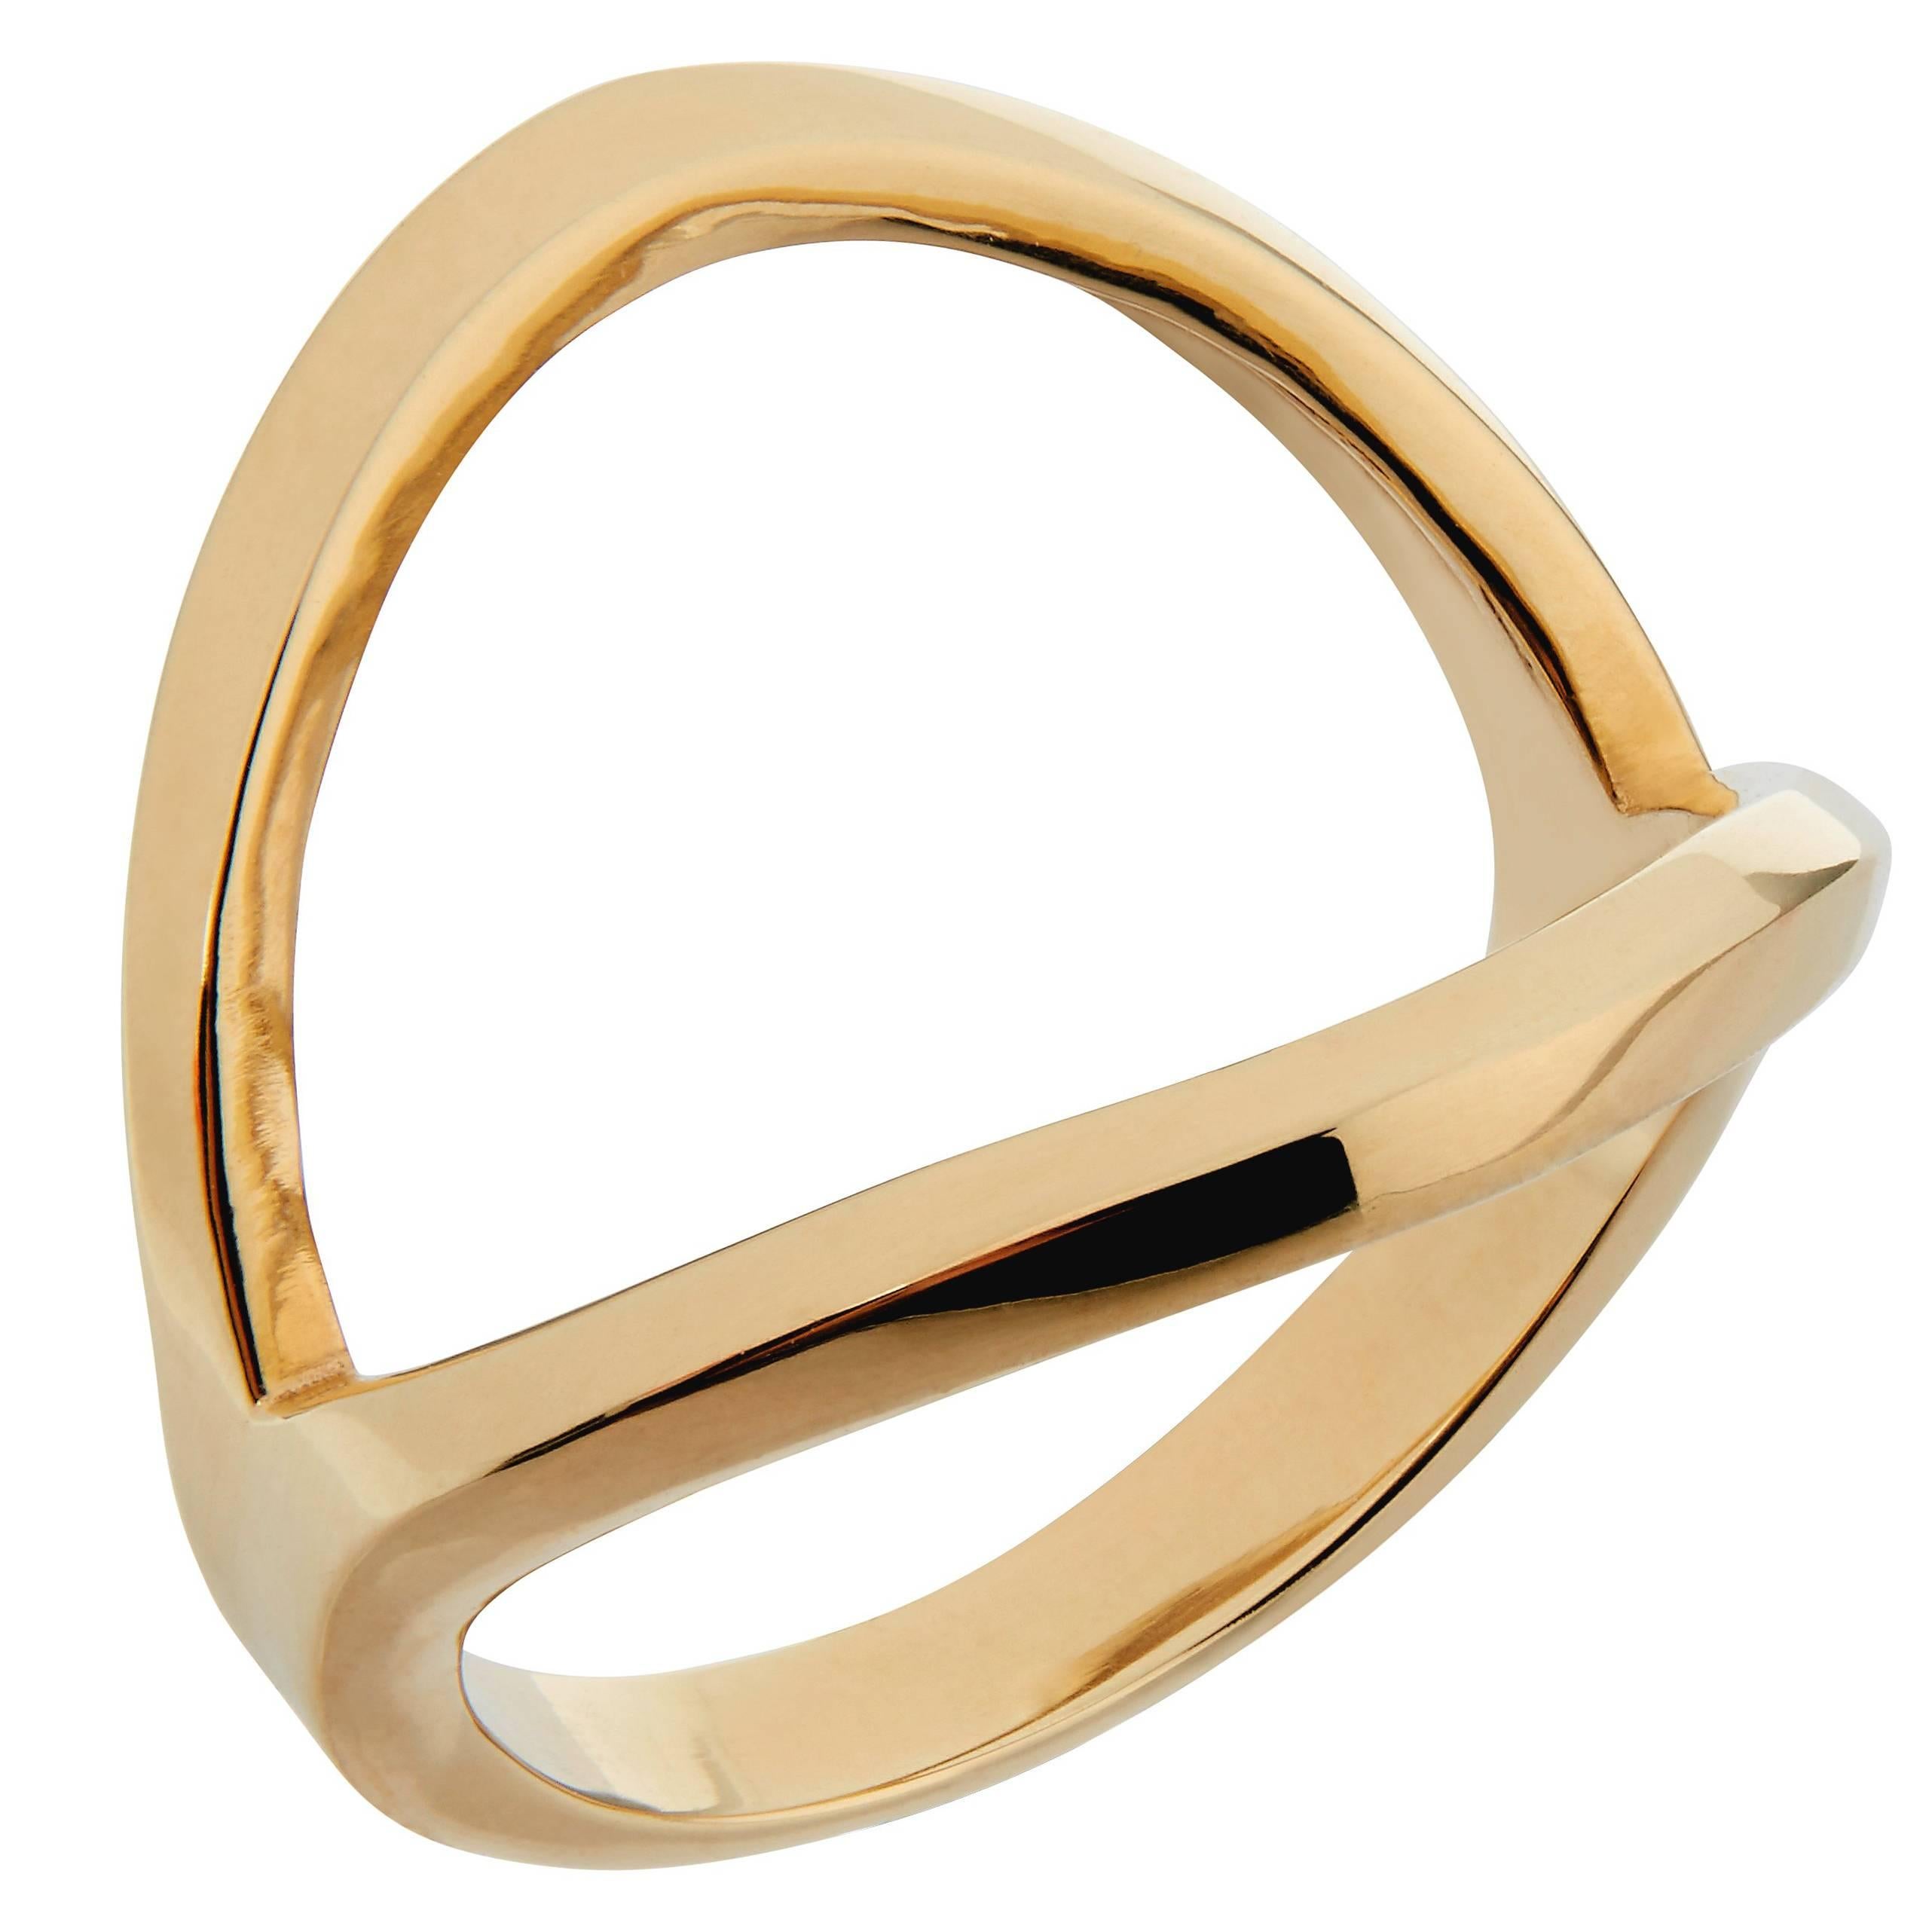 Zara Simon Ibiza Yellow Gold Ring For Sale